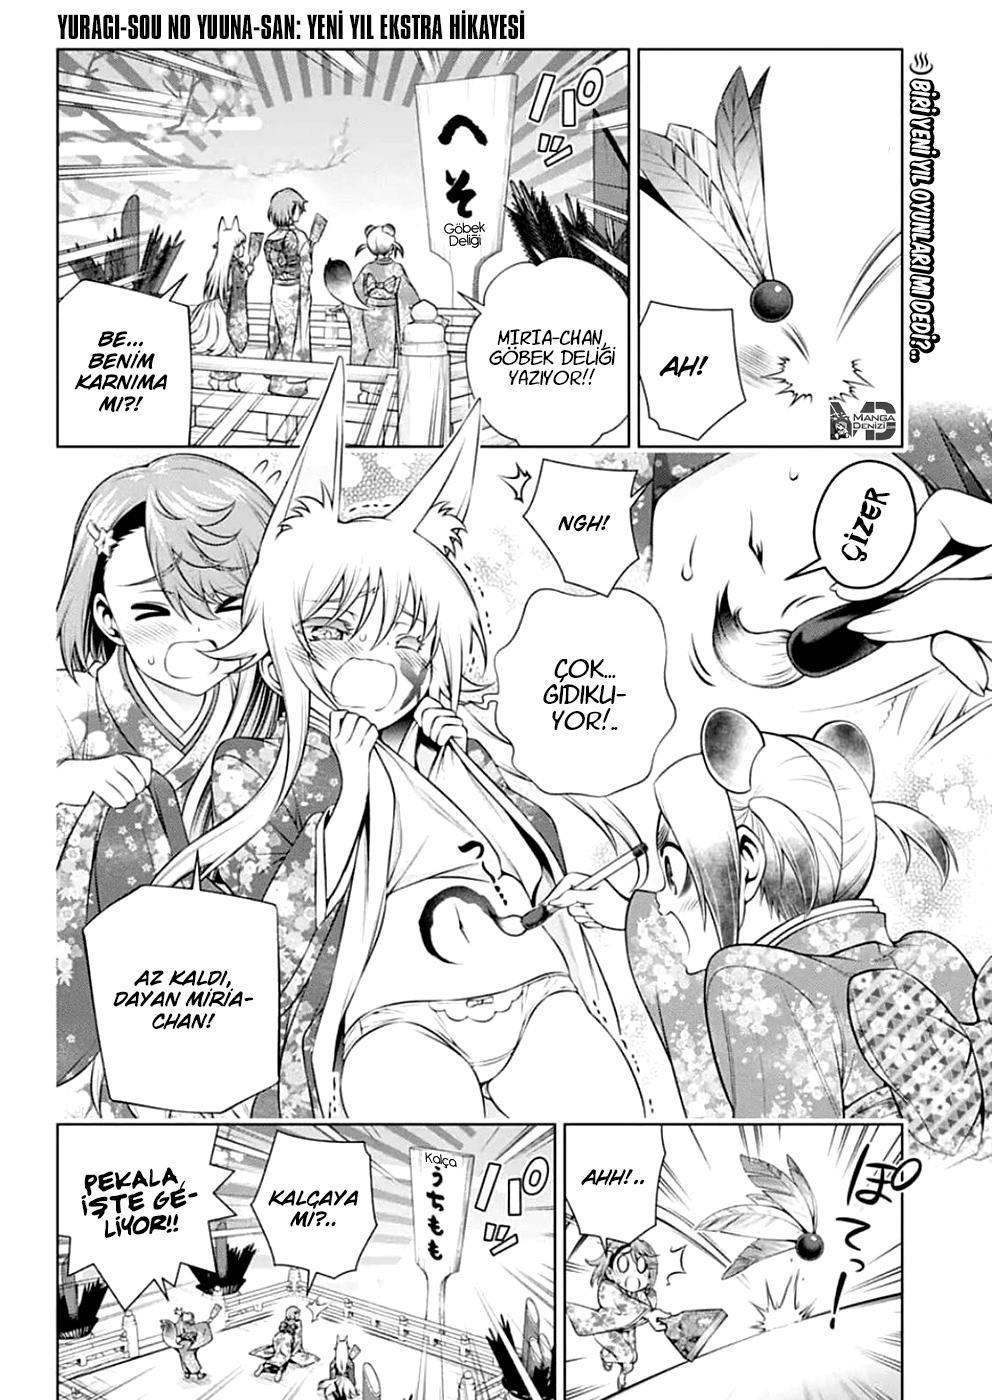 Yuragi-sou no Yuuna-san mangasının 190.5 bölümünün 2. sayfasını okuyorsunuz.